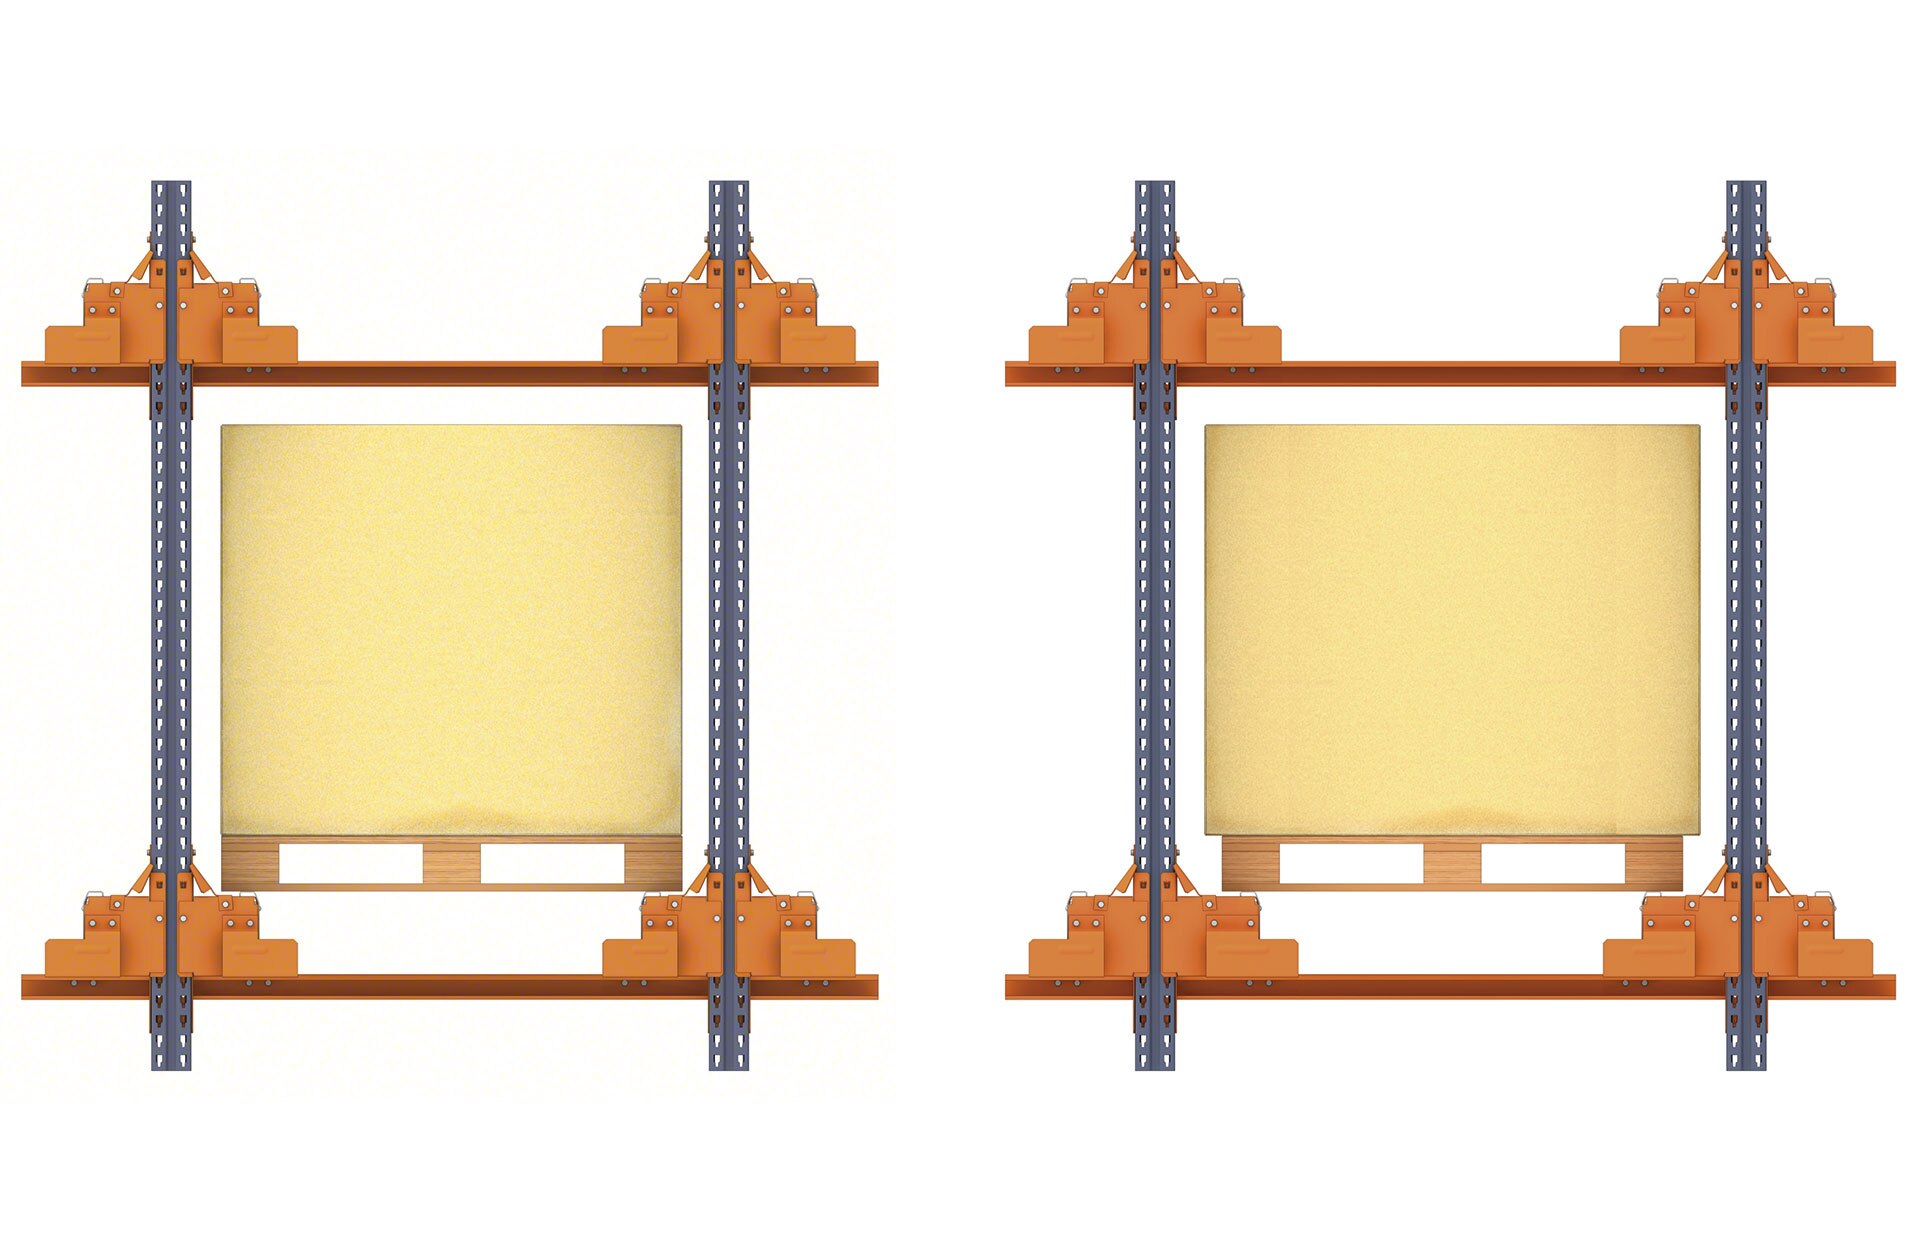 As folgas das estantes são determinadas baseando-se nas dimensões da unidade de carga armazenada